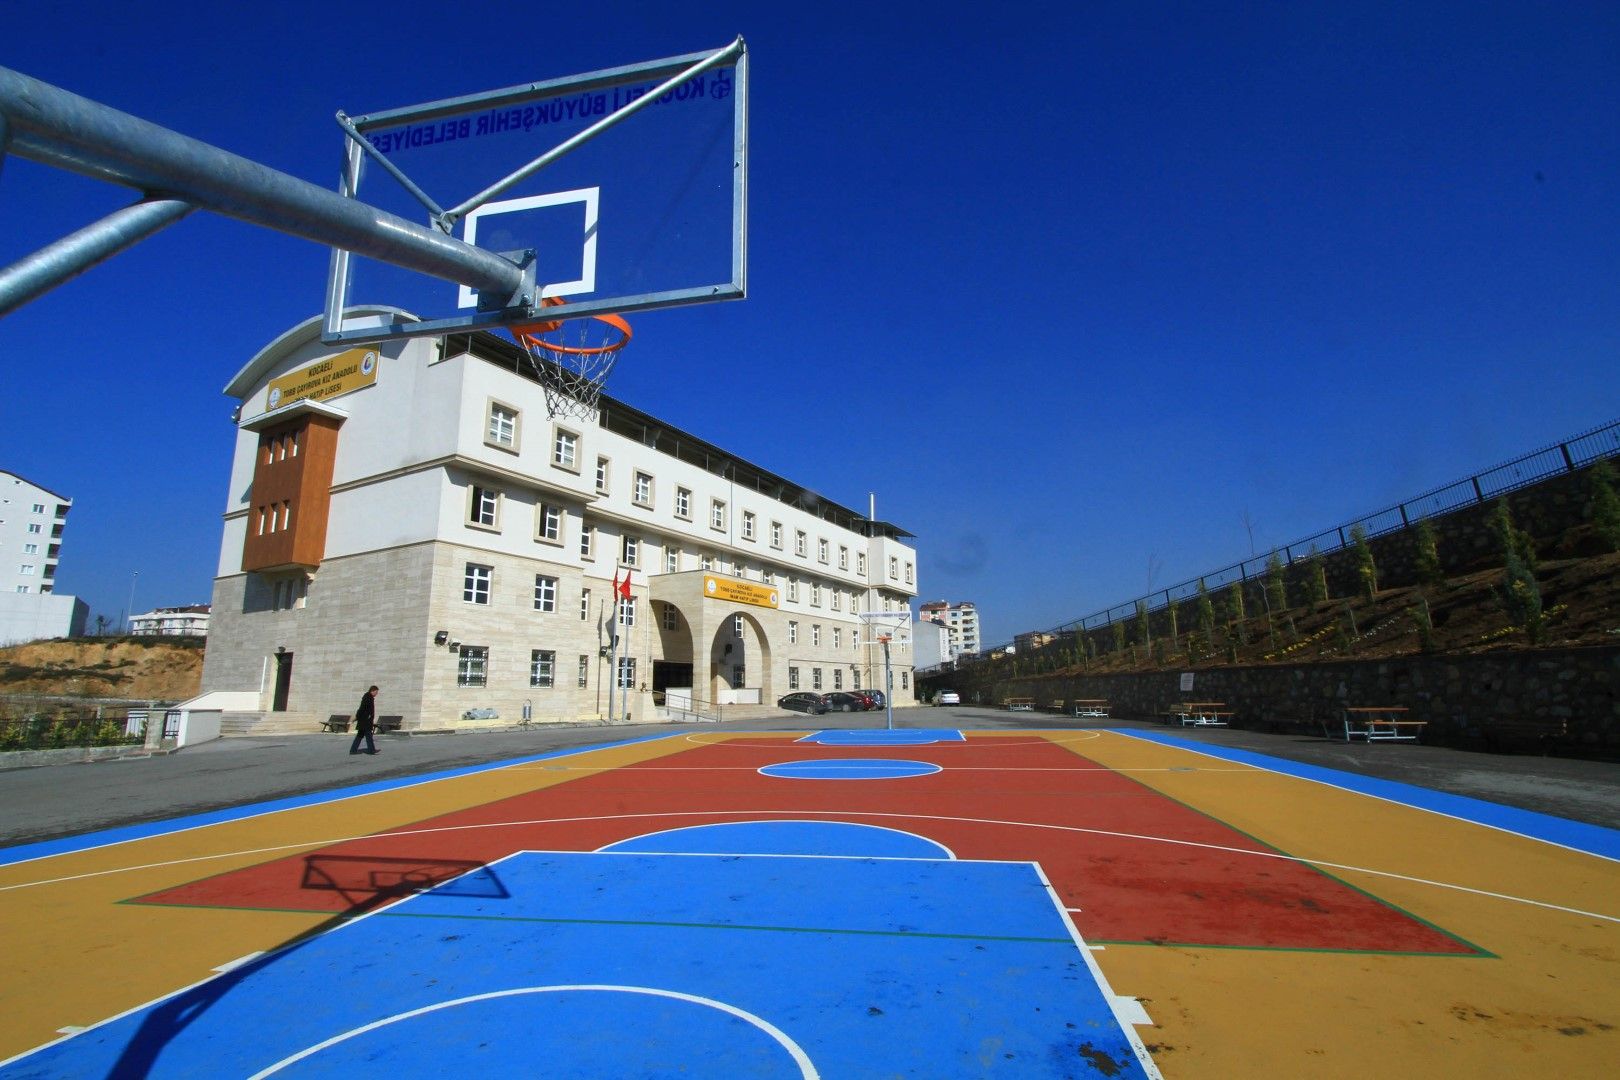 Kocaeli’de 70 Okula Basketbol Sahası!